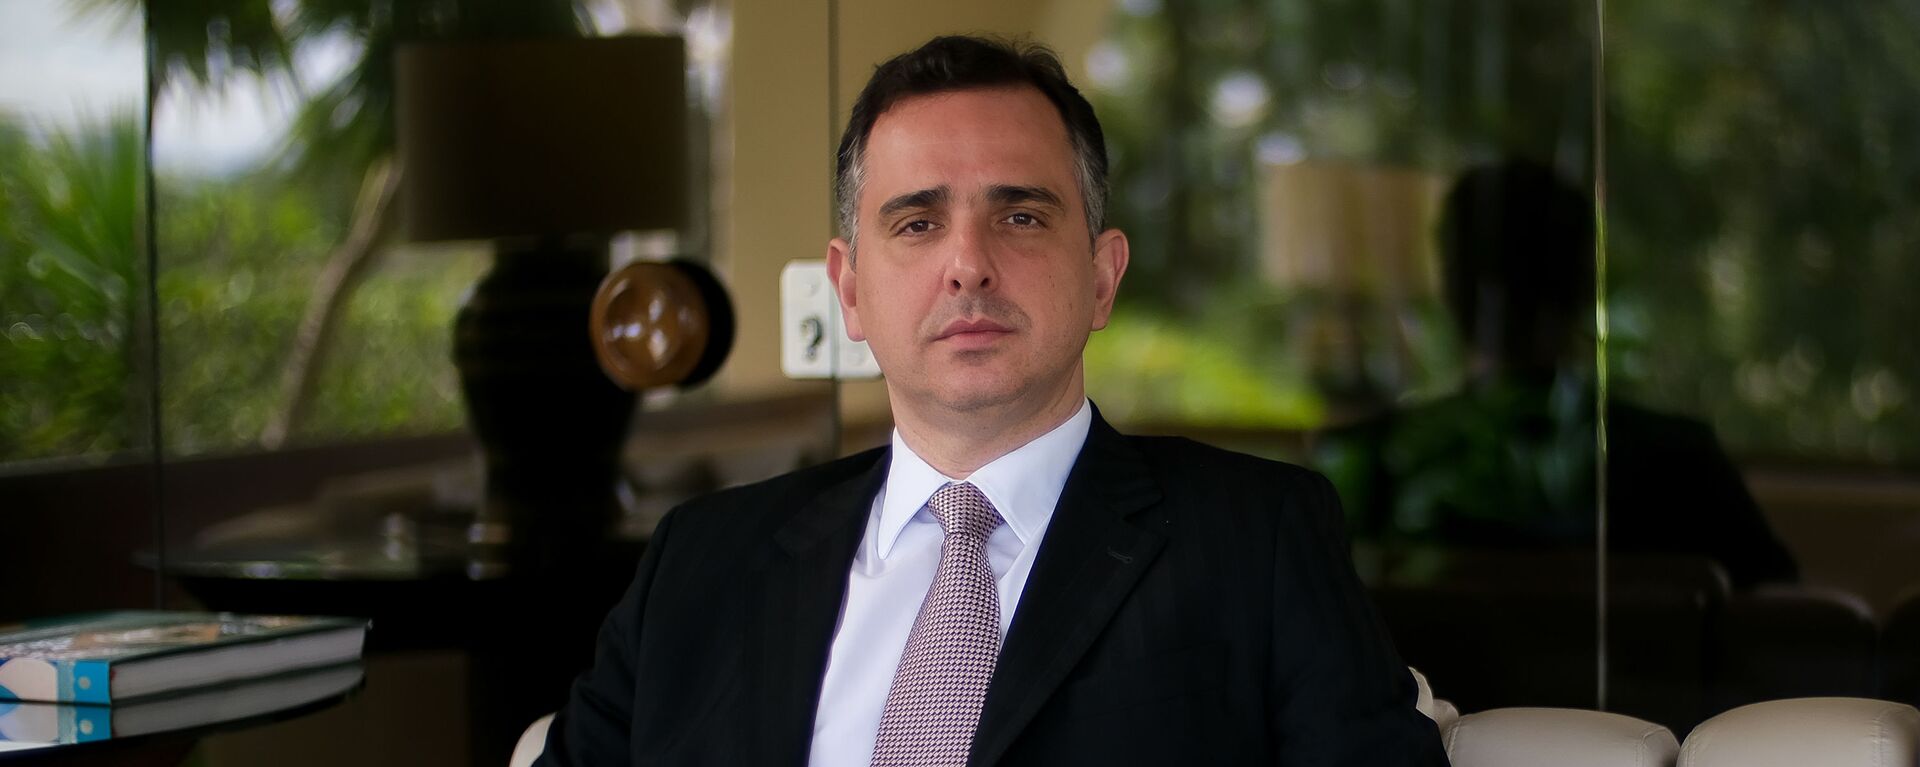 O presidente do Senado federal, senador Rodrigo Pacheco (DEM-MG), posa para fotos após entrevista, na residência oficial do Senado, em Brasília (DF), 20 de abril de 2021 - Sputnik Brasil, 1920, 02.09.2021